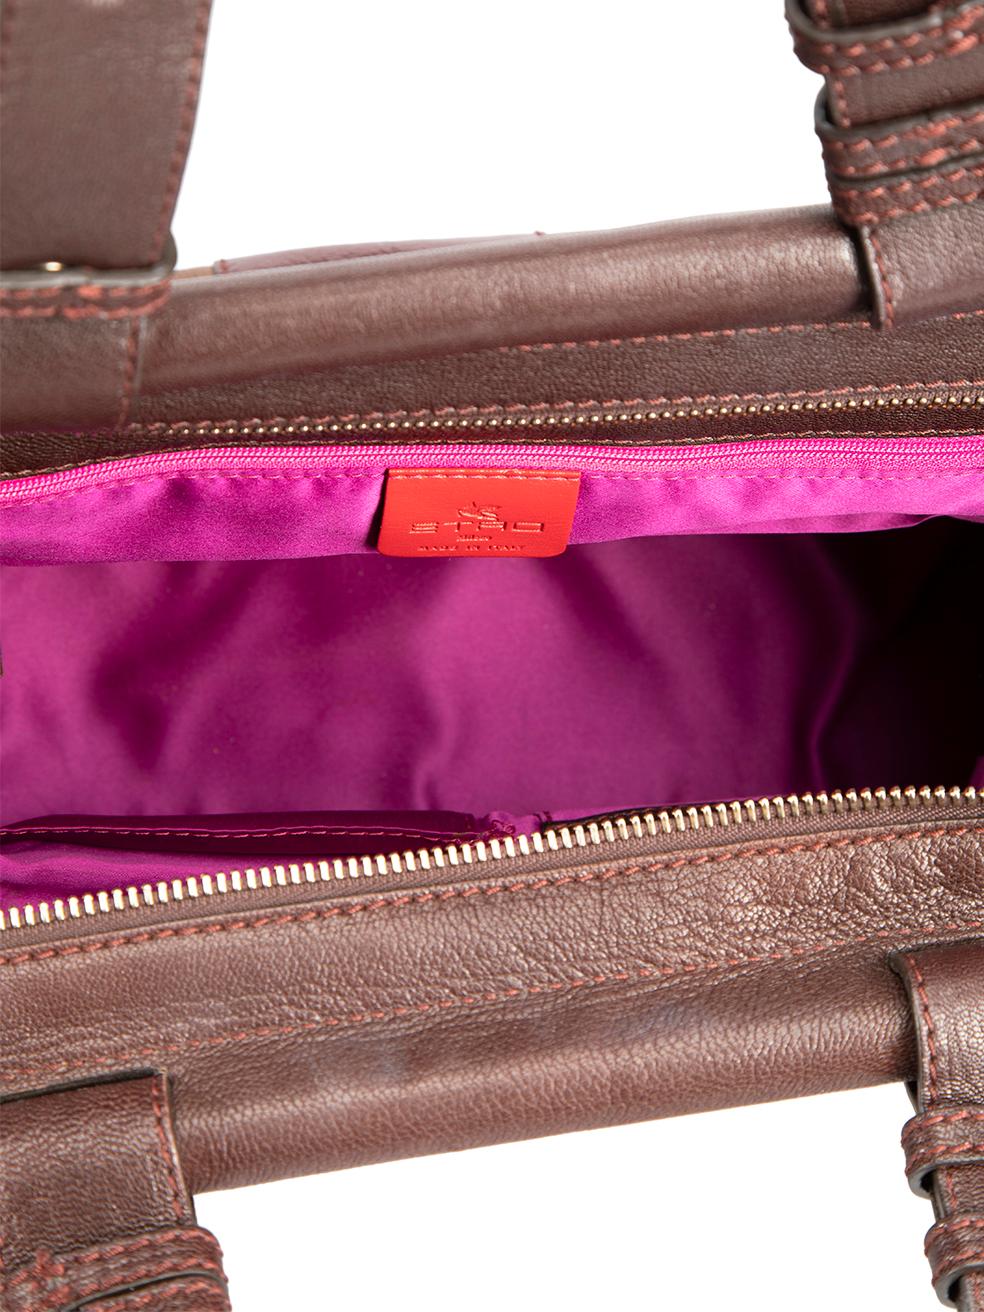 Etro Brown Leather Shoulder Bag For Sale 1